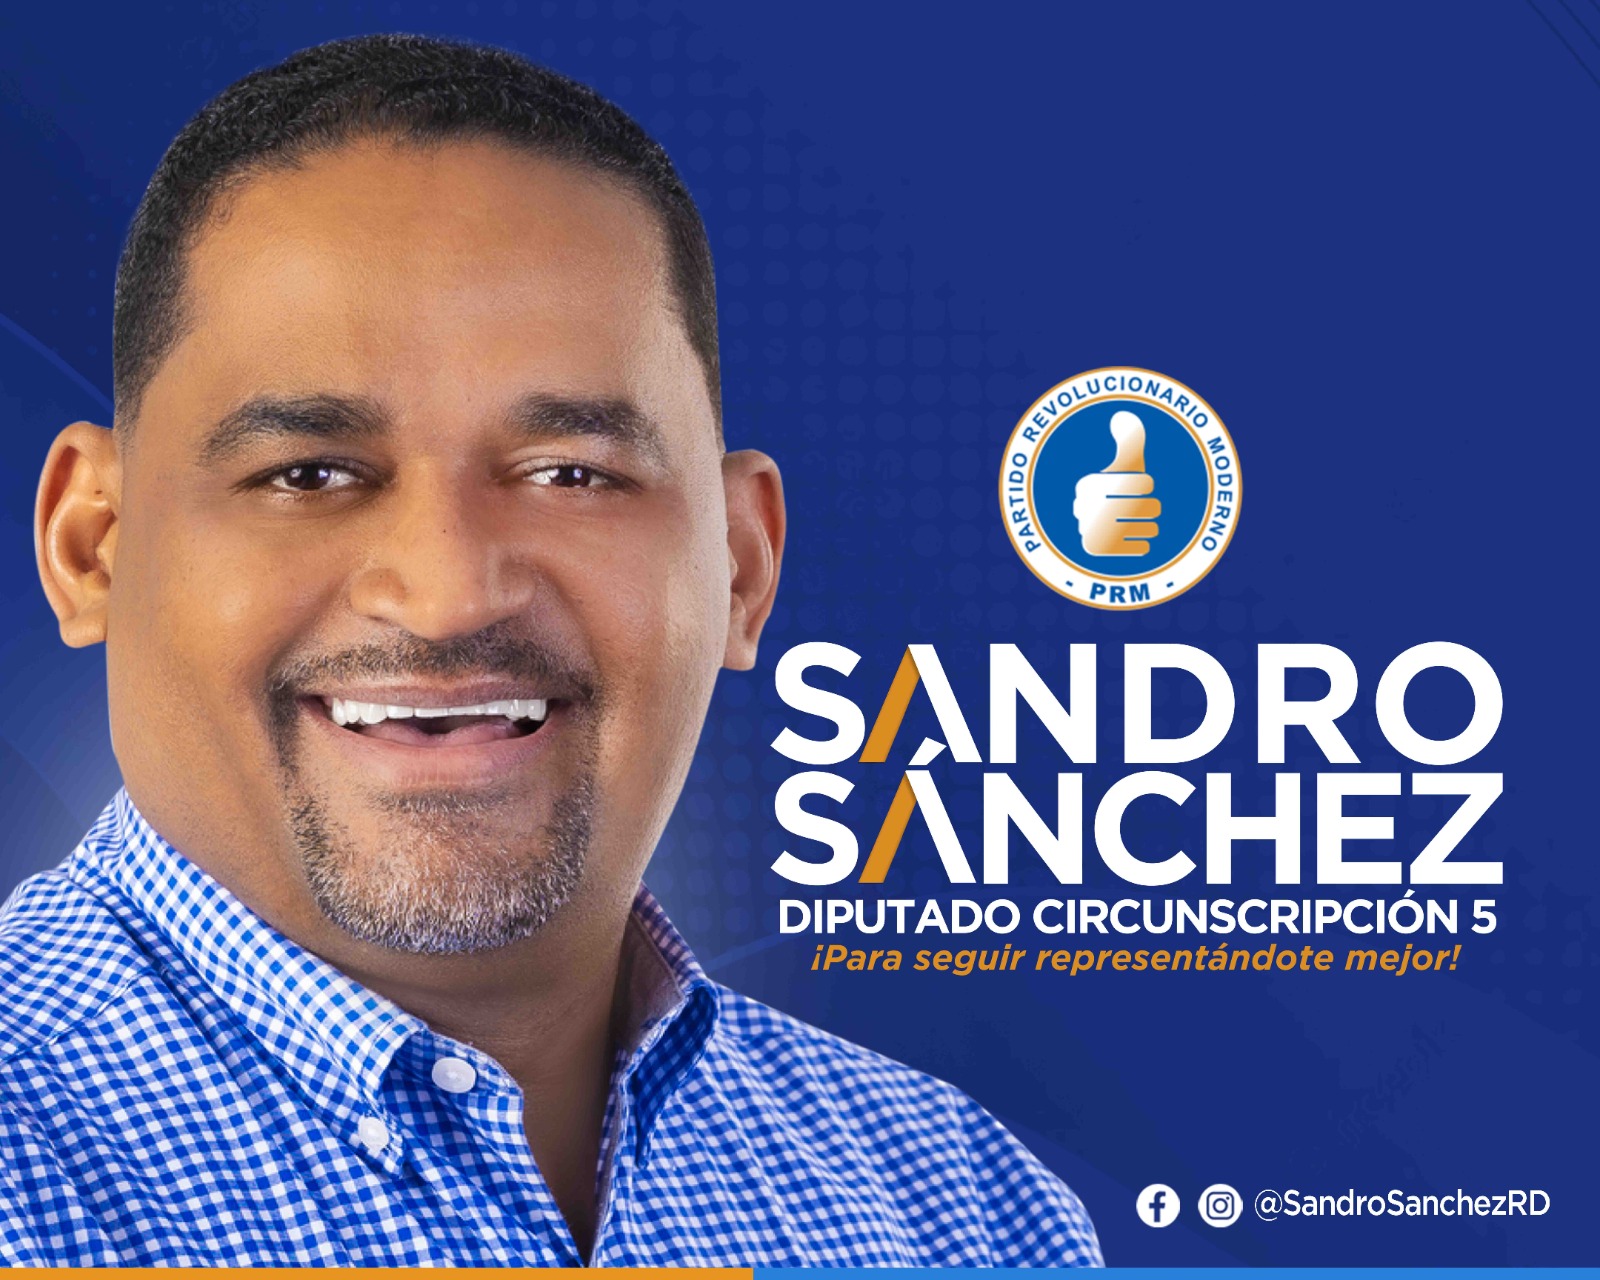 Sandro Sánchez, circunscripción 5, para seguir representándote mejor